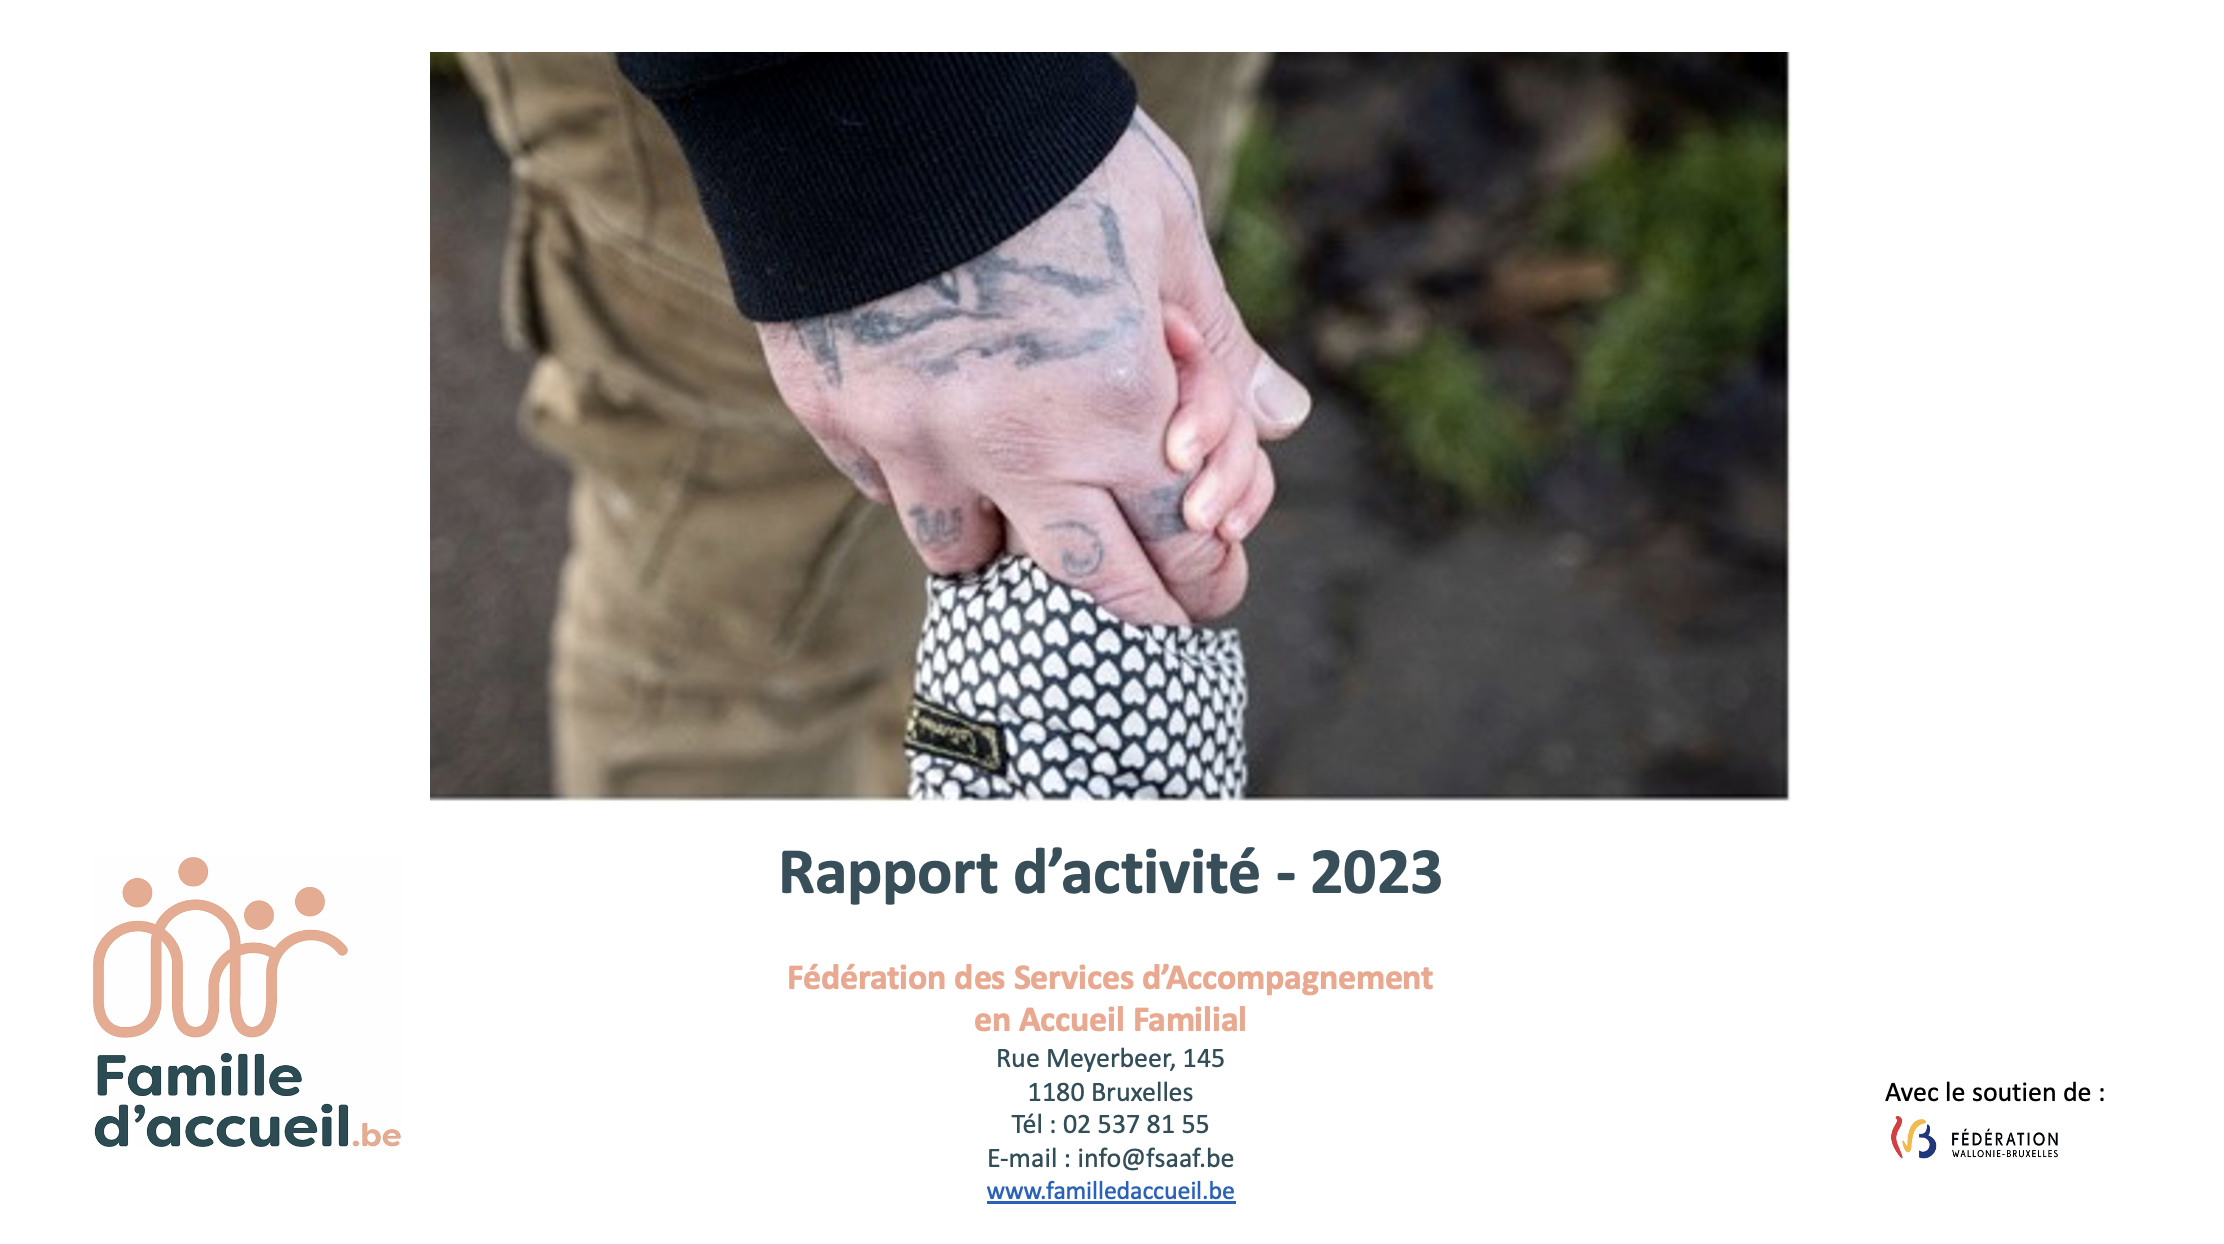 RAPPORT D'ACTIVITÉ 2023